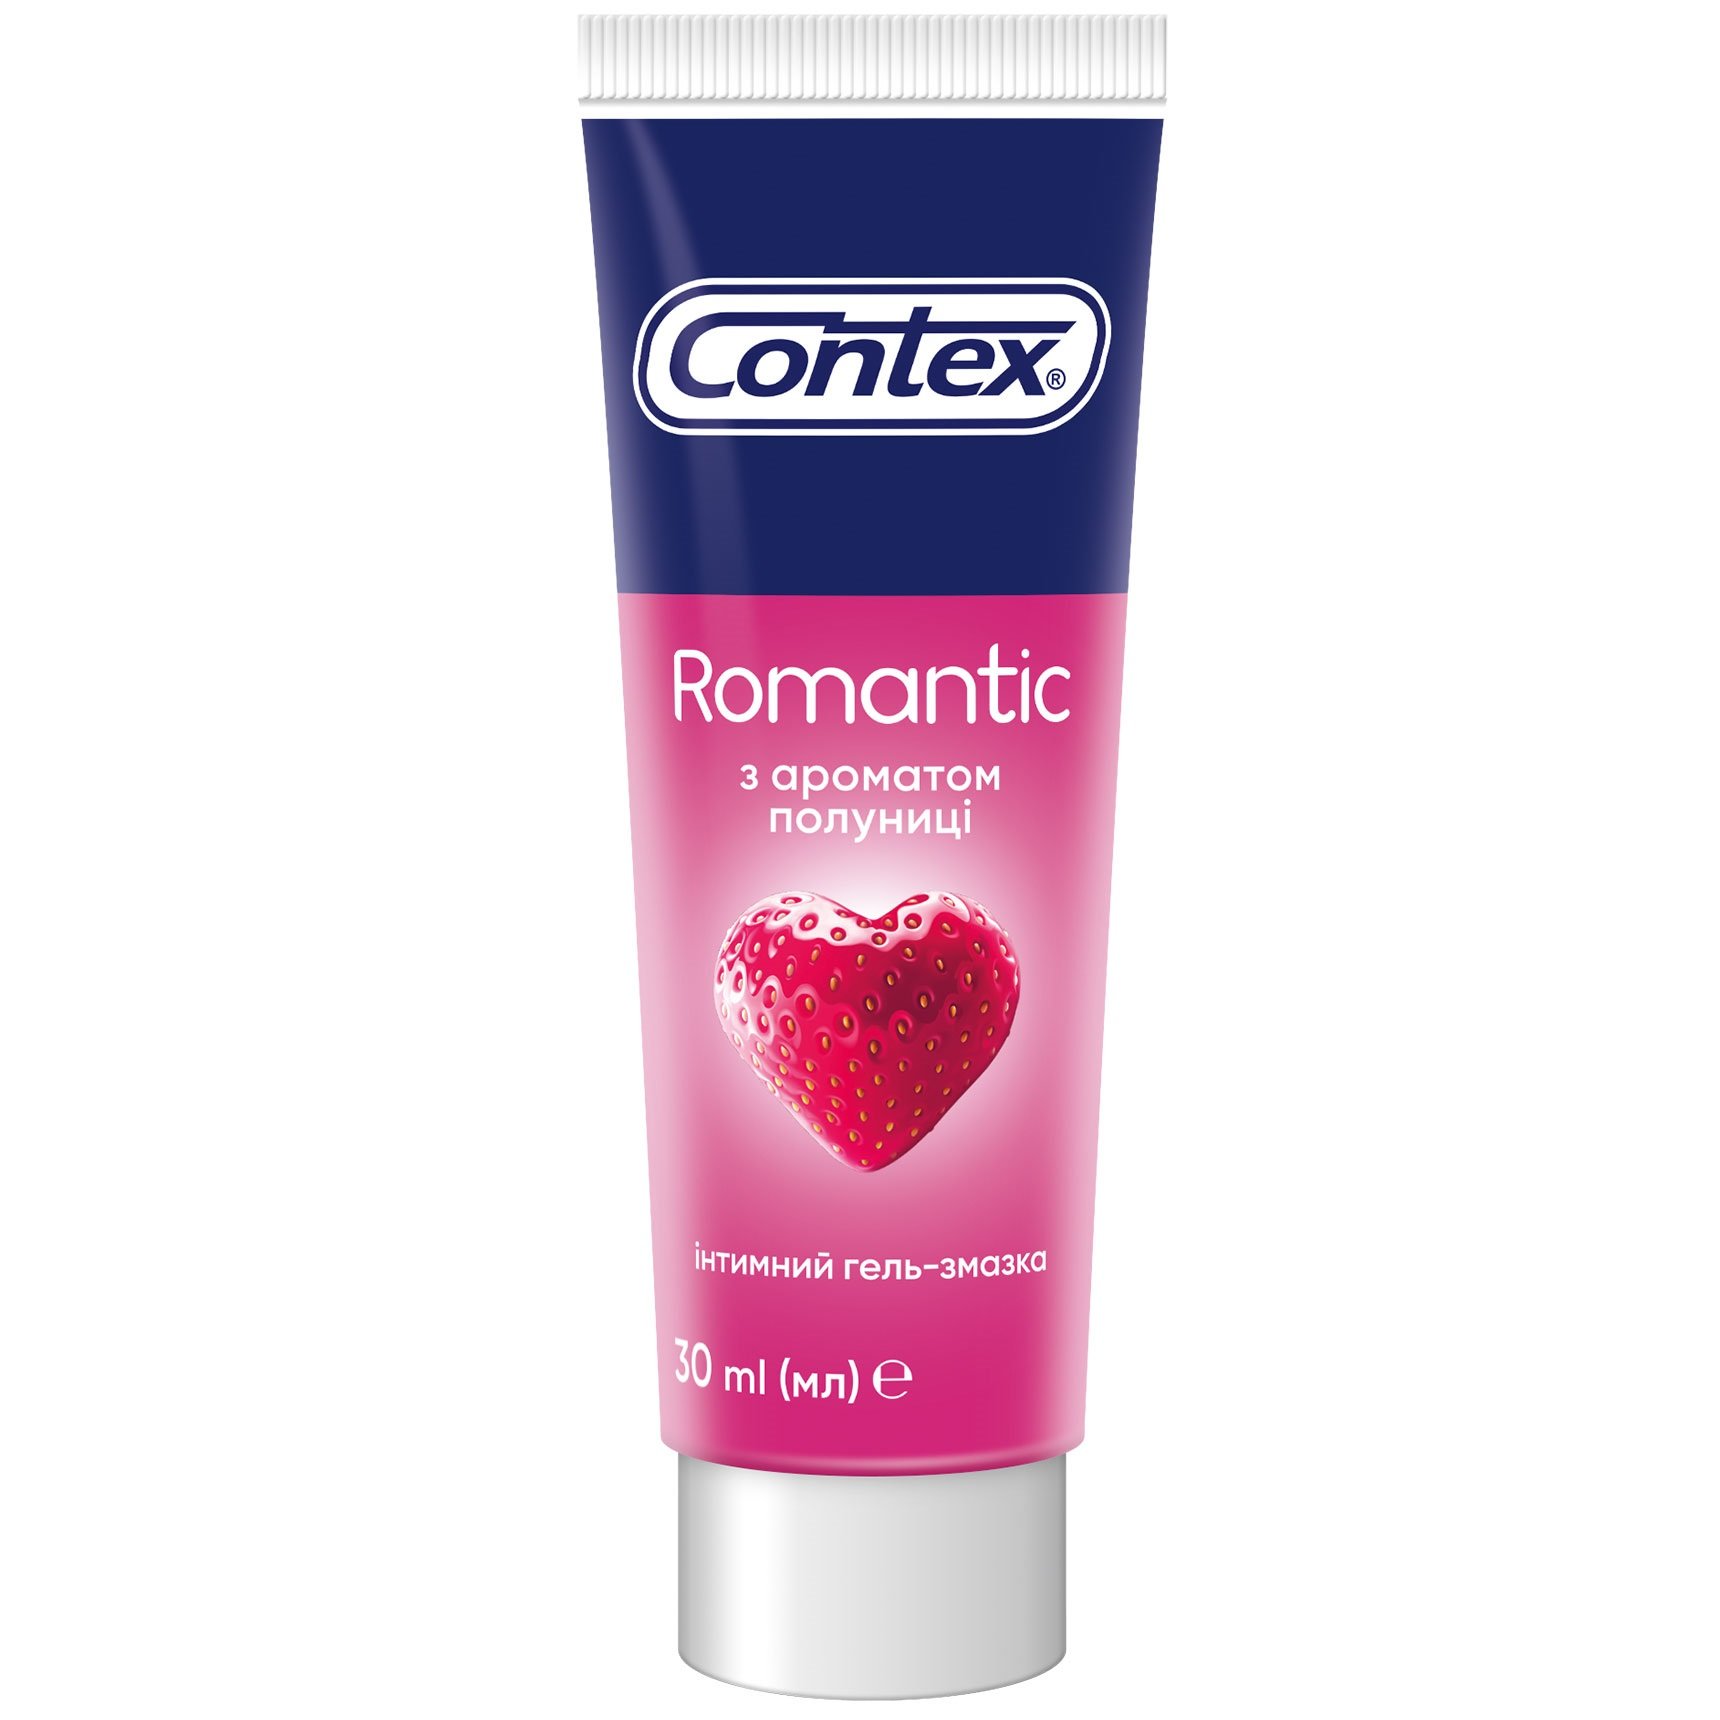 Интимный гель-смазка Contex Romantic с ароматом клубники (лубрикант), 30 мл (8124793) - фото 1